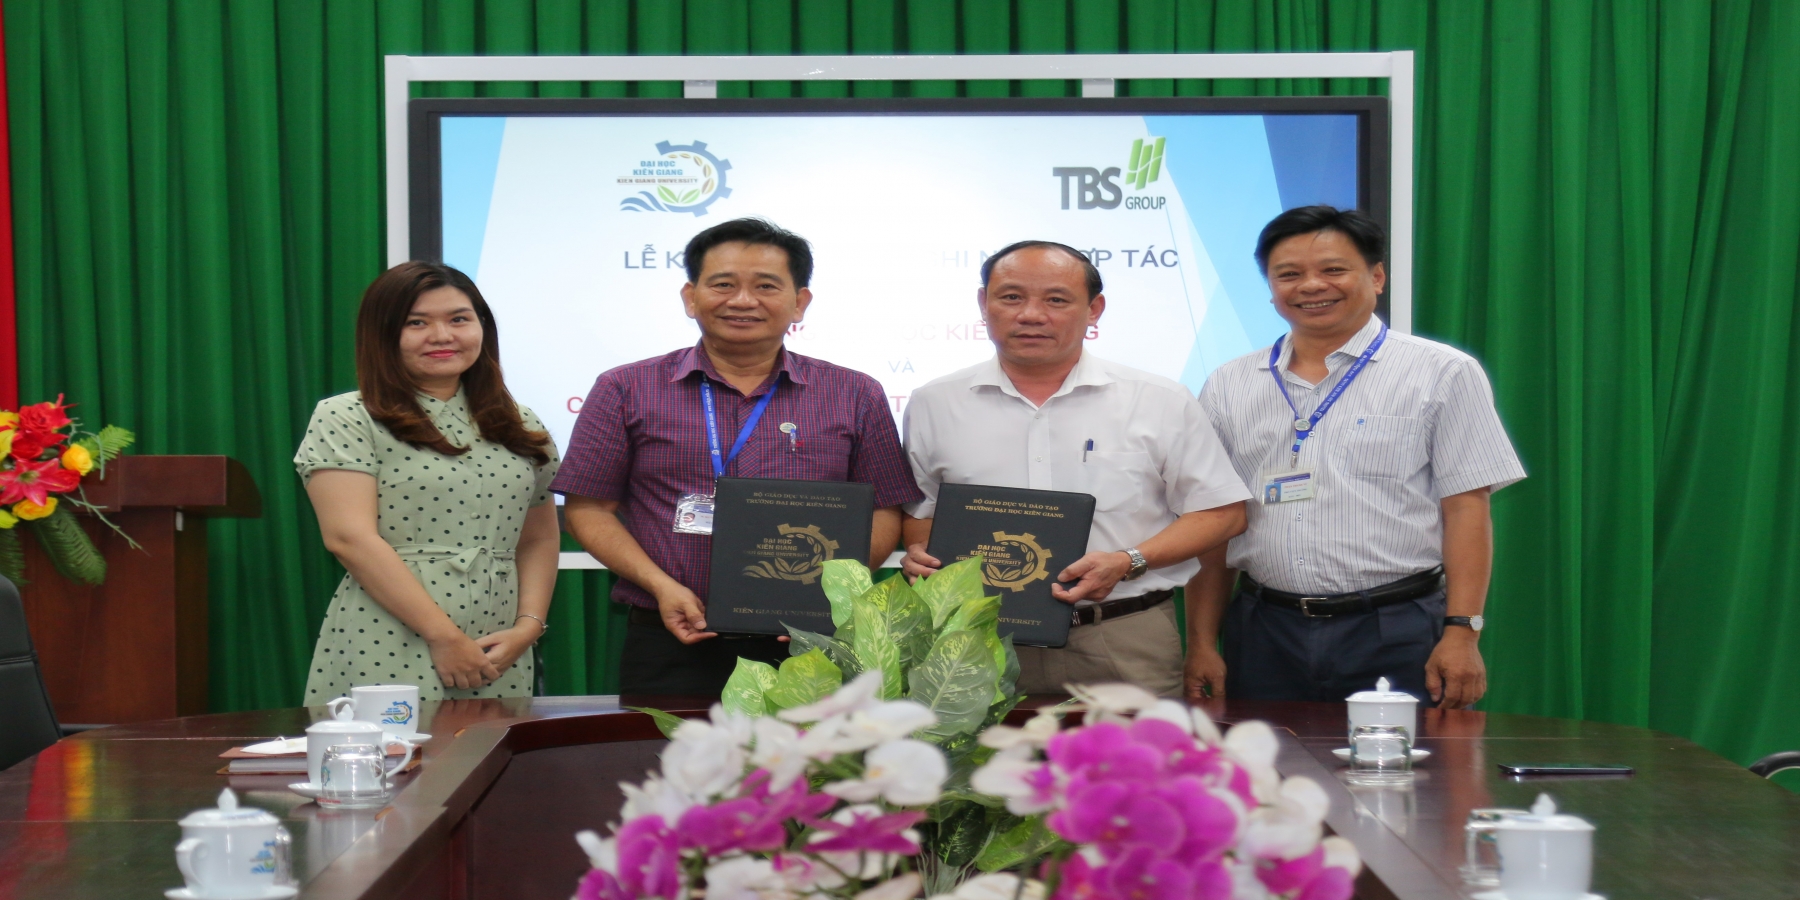 Trường Đại học Kiên Giang ký kết hợp tác với Công ty cổ phần Đầu tư Thái Bình Kiên Giang